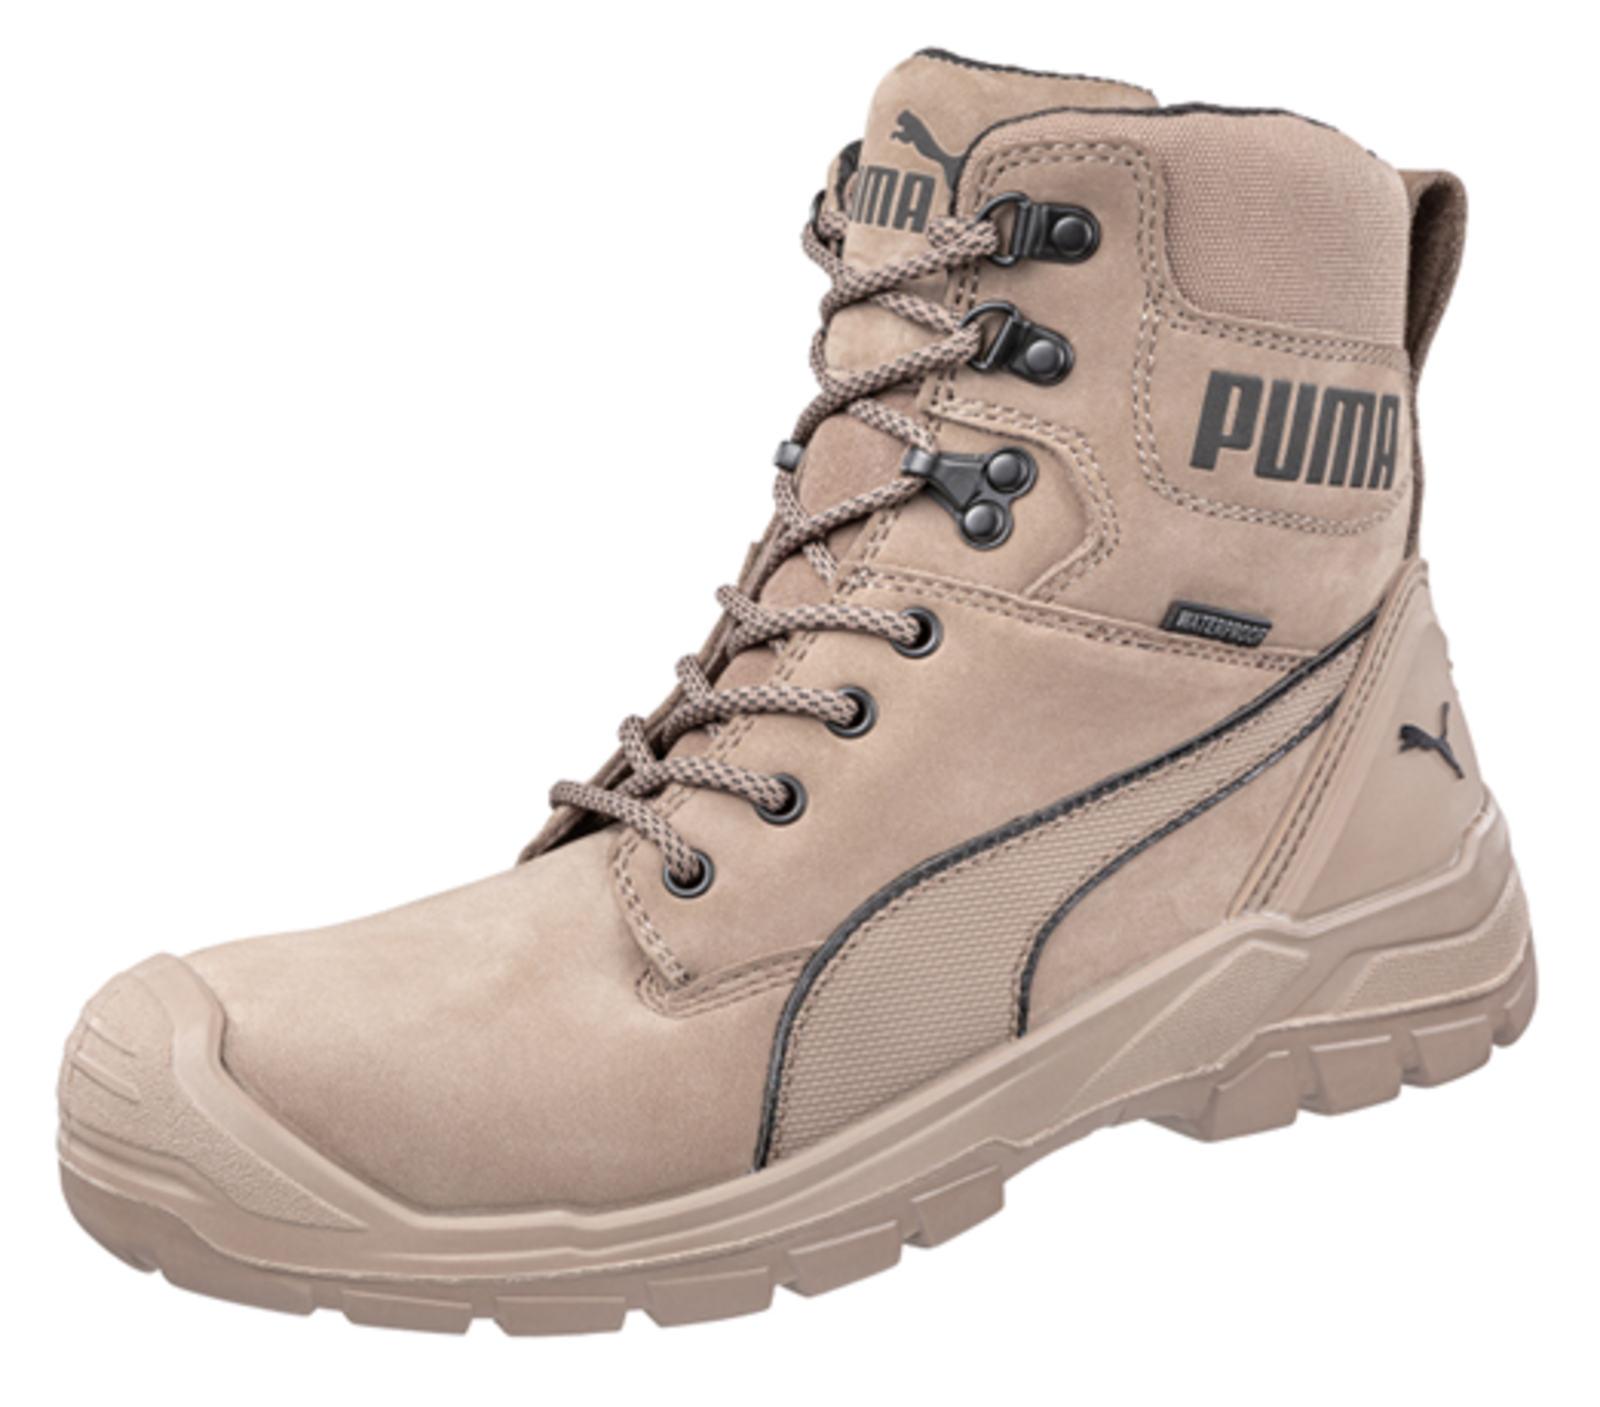 Bezpečnostná obuv Puma Conquest Stone S3 - veľkosť: 43, farba: svetlohnedá